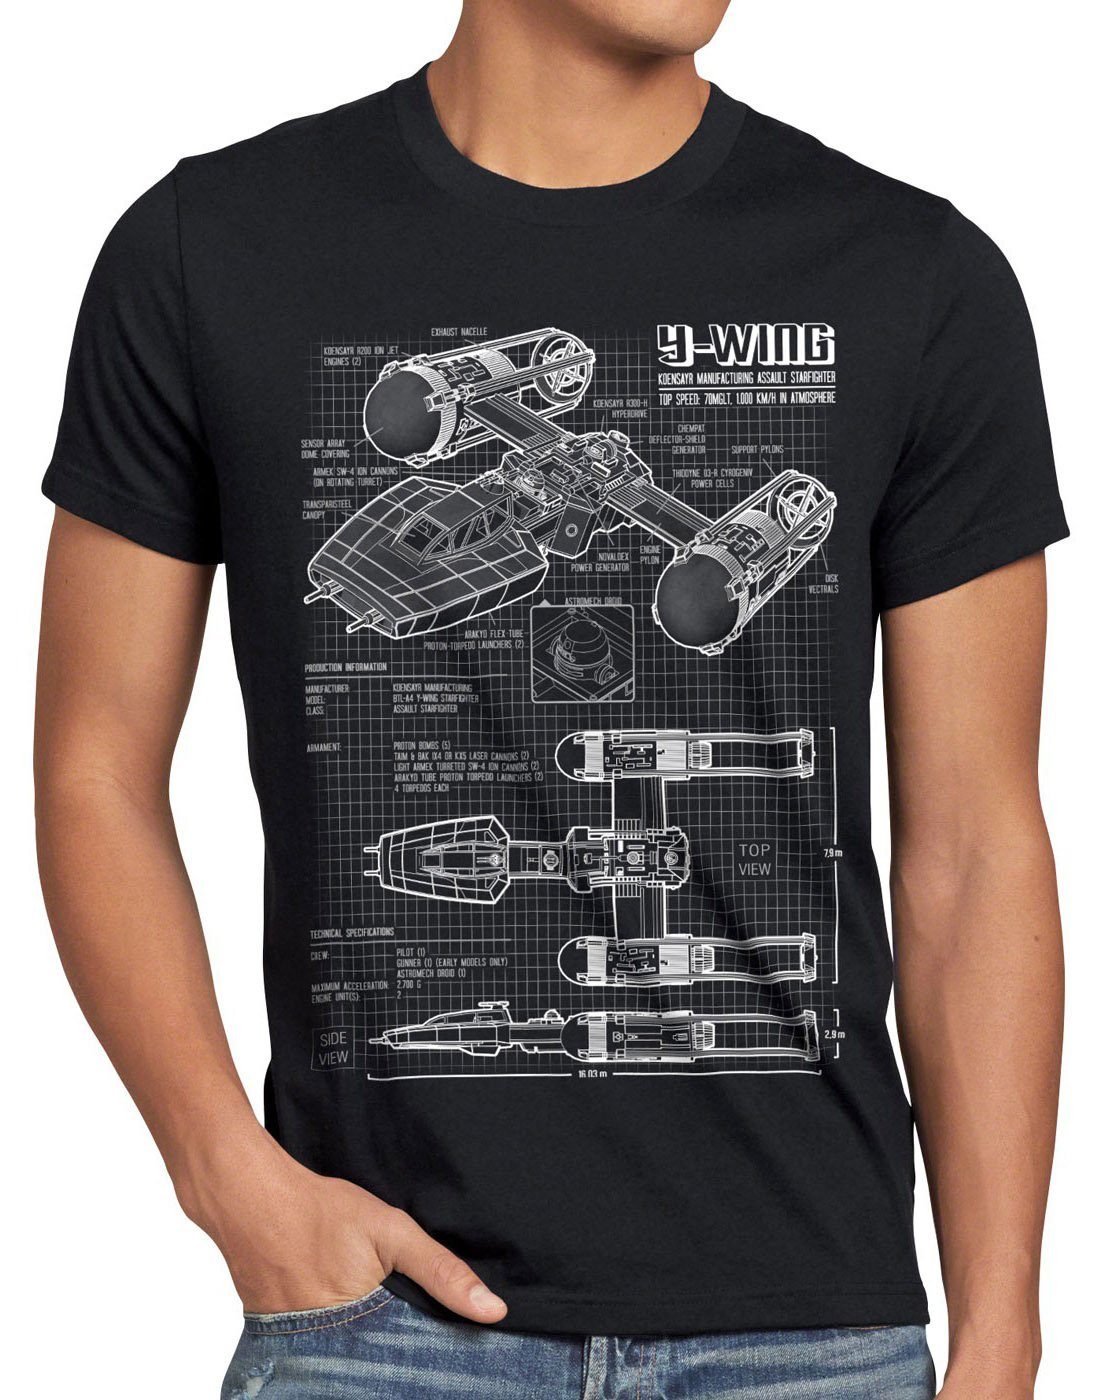 style3 Print-Shirt Herren T-Shirt Y-Wing rebellion star krieg sterne der wars battlefront x-wing schwarz